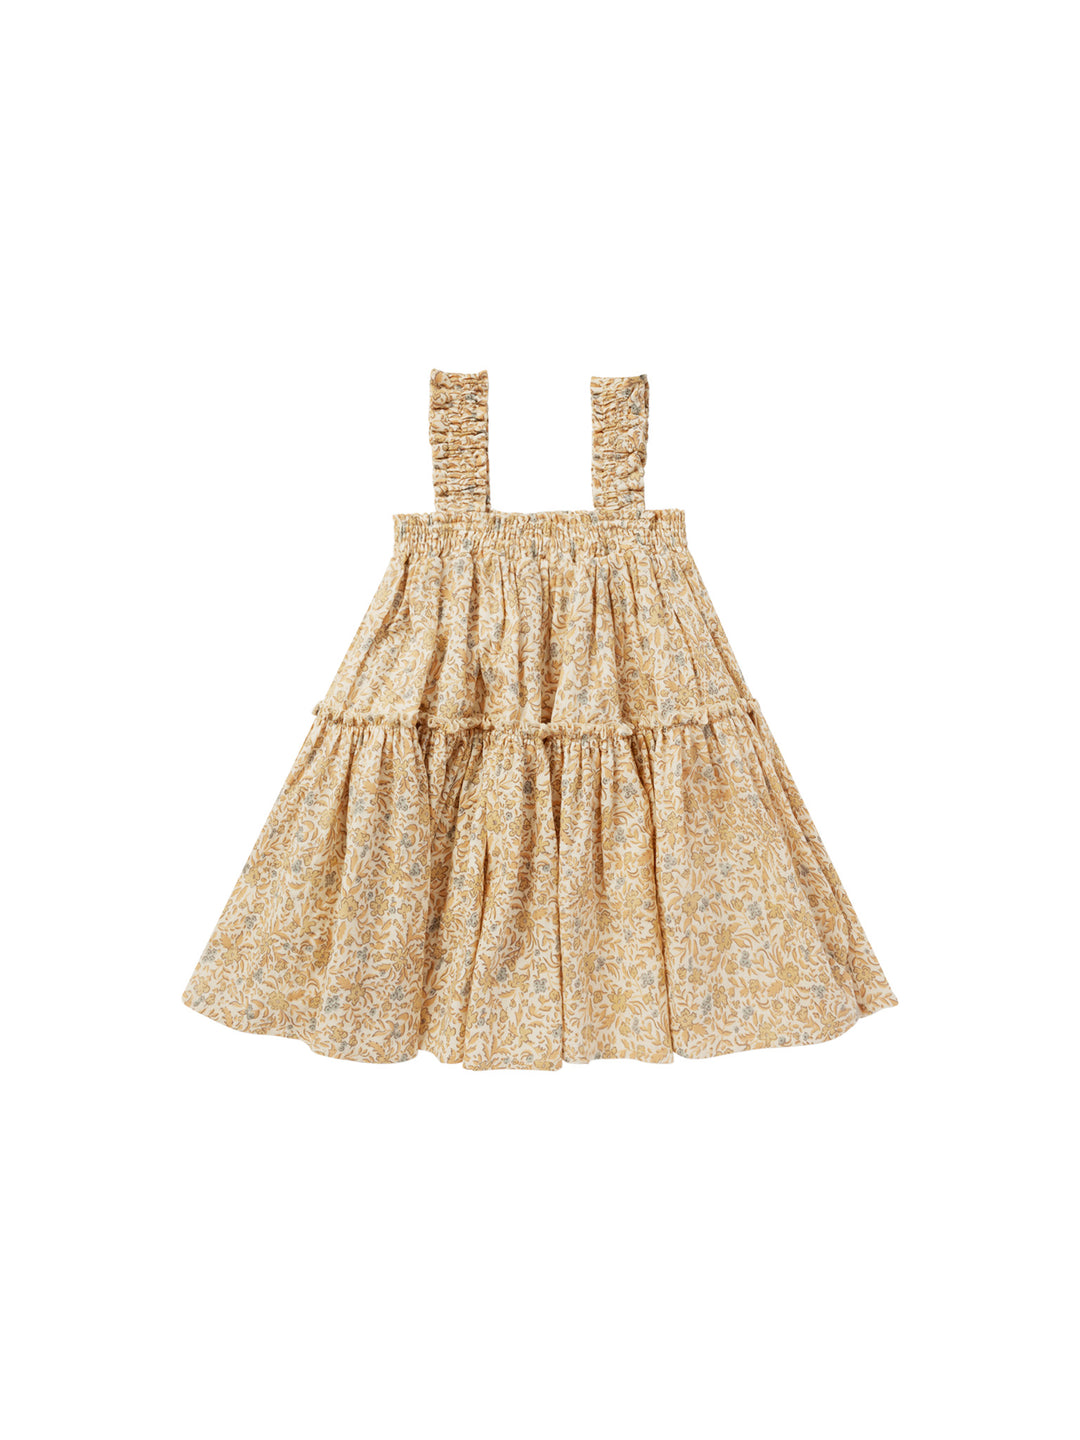 Rylee + Cru Cicily Dress, Blossom |Mockingbird Baby & Kids